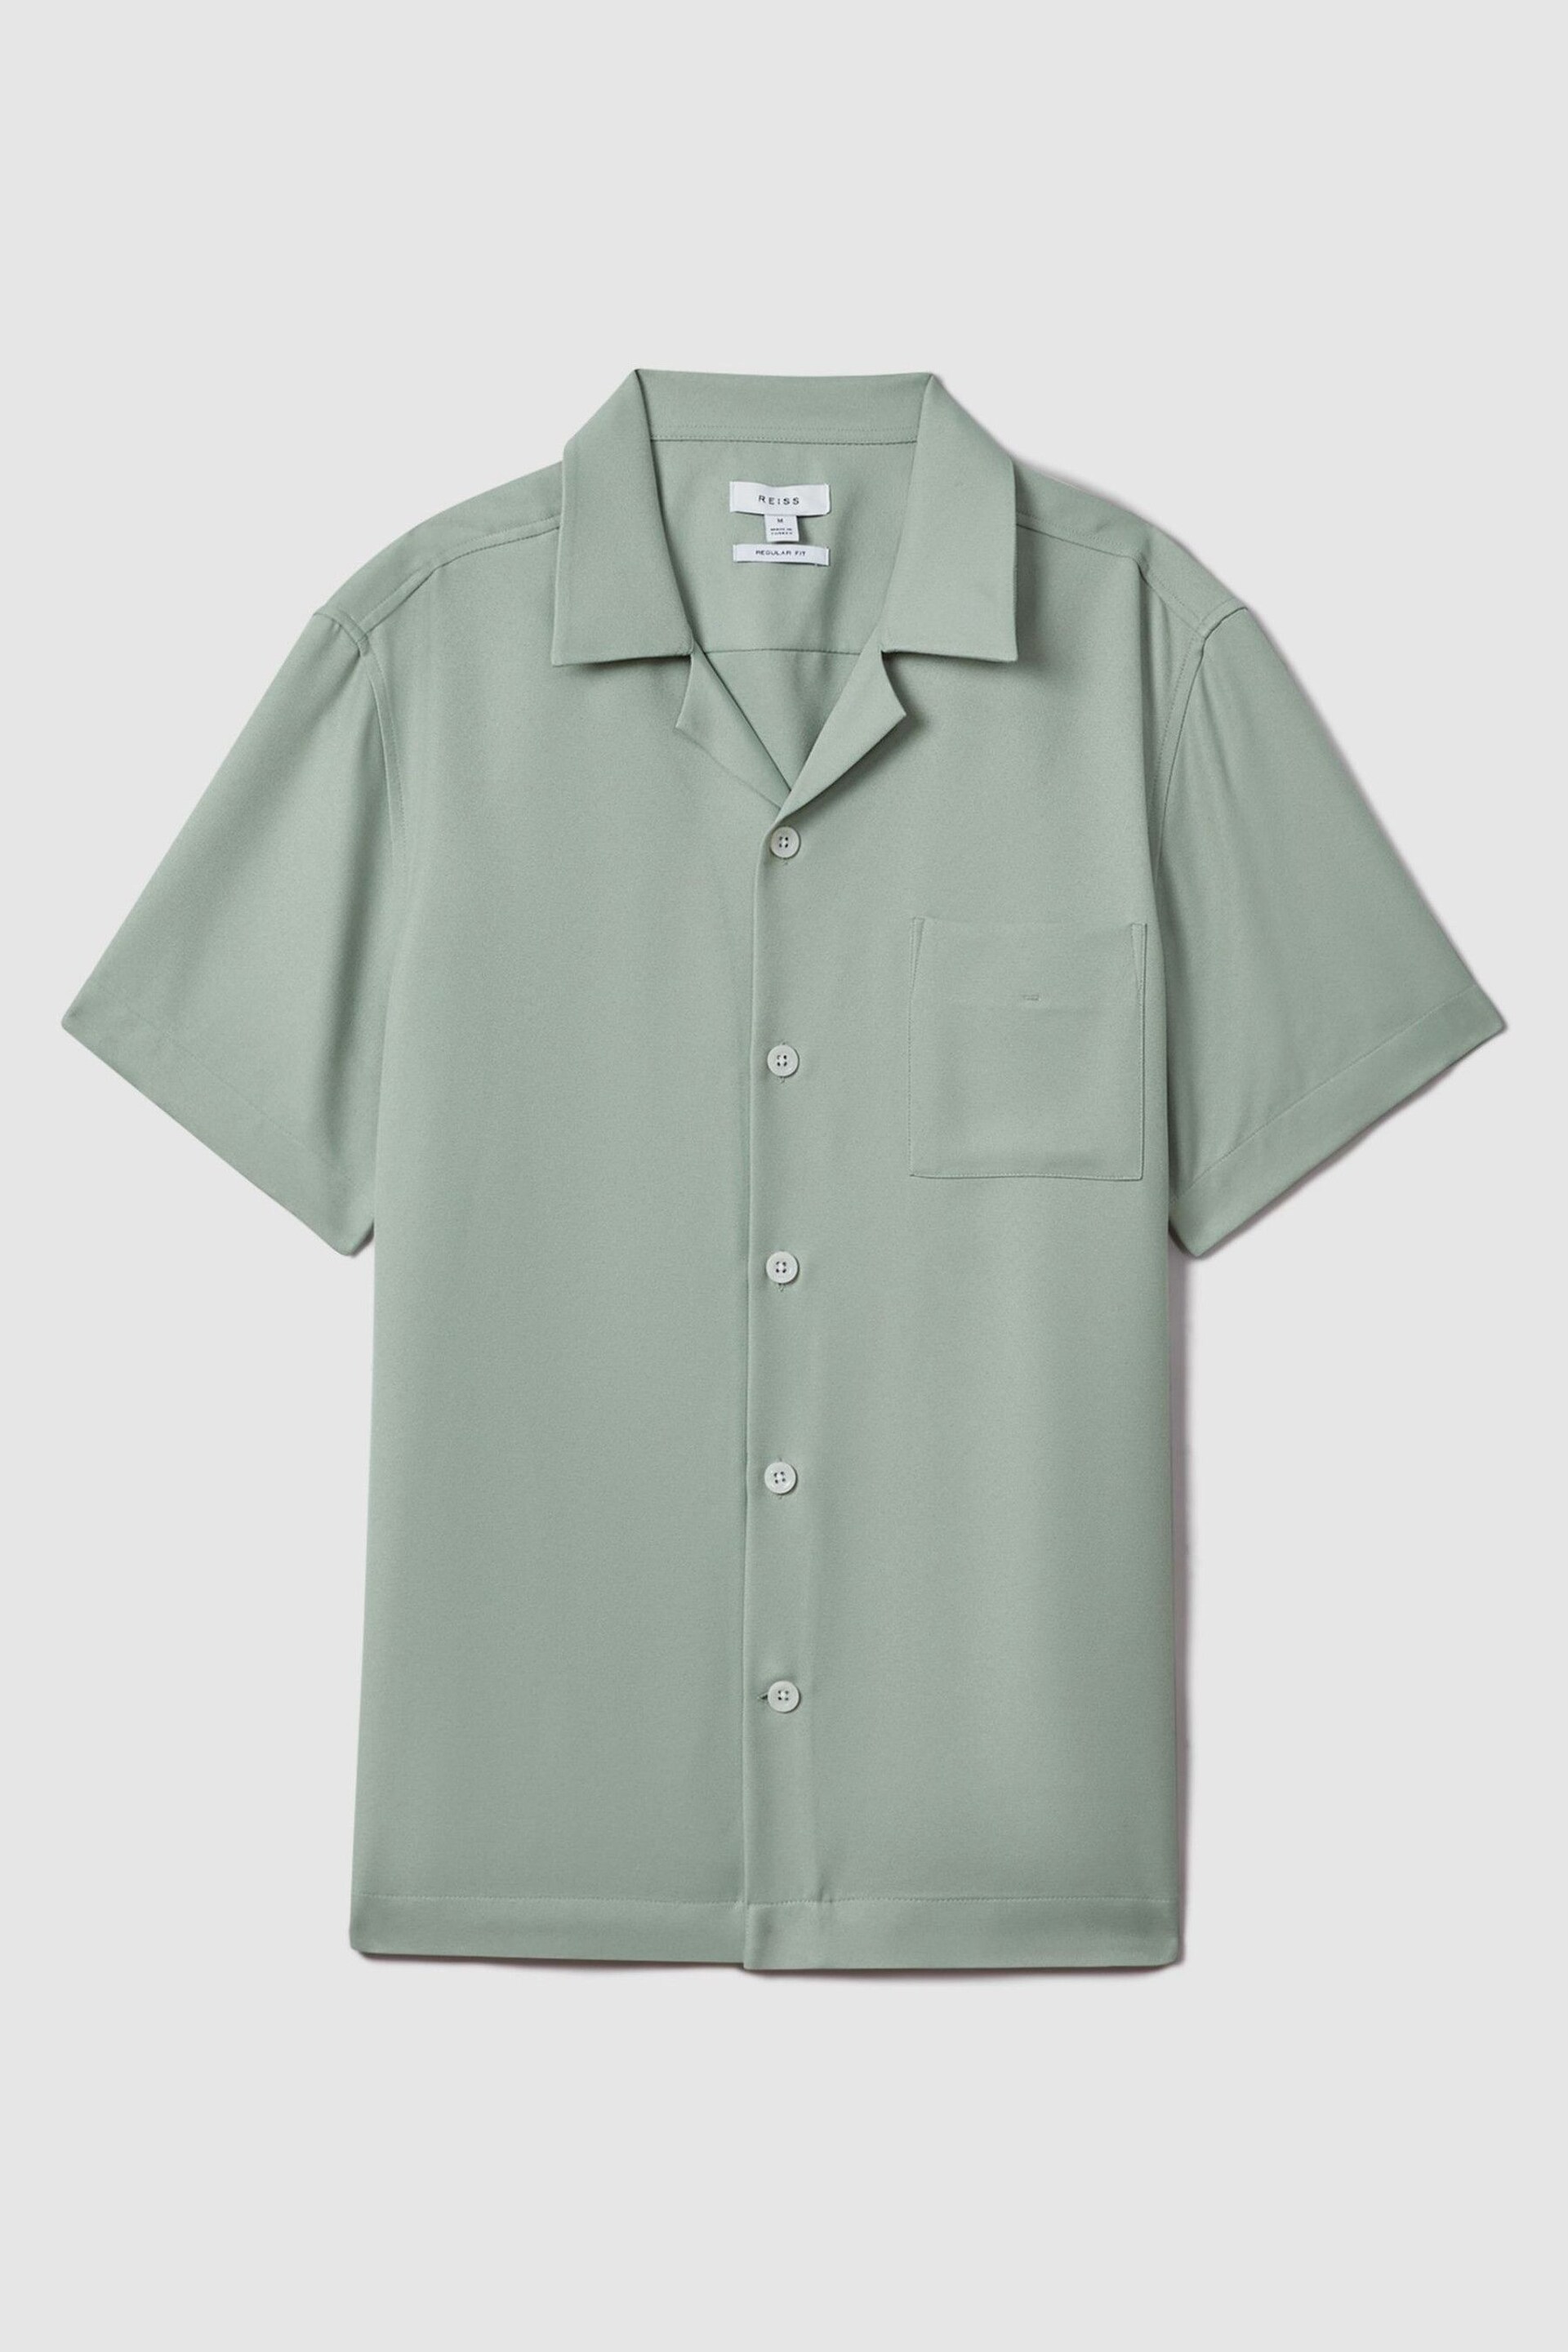 Reiss Pistachio Tokyo Cuban Collar Button-Through Shirt - Image 2 of 6